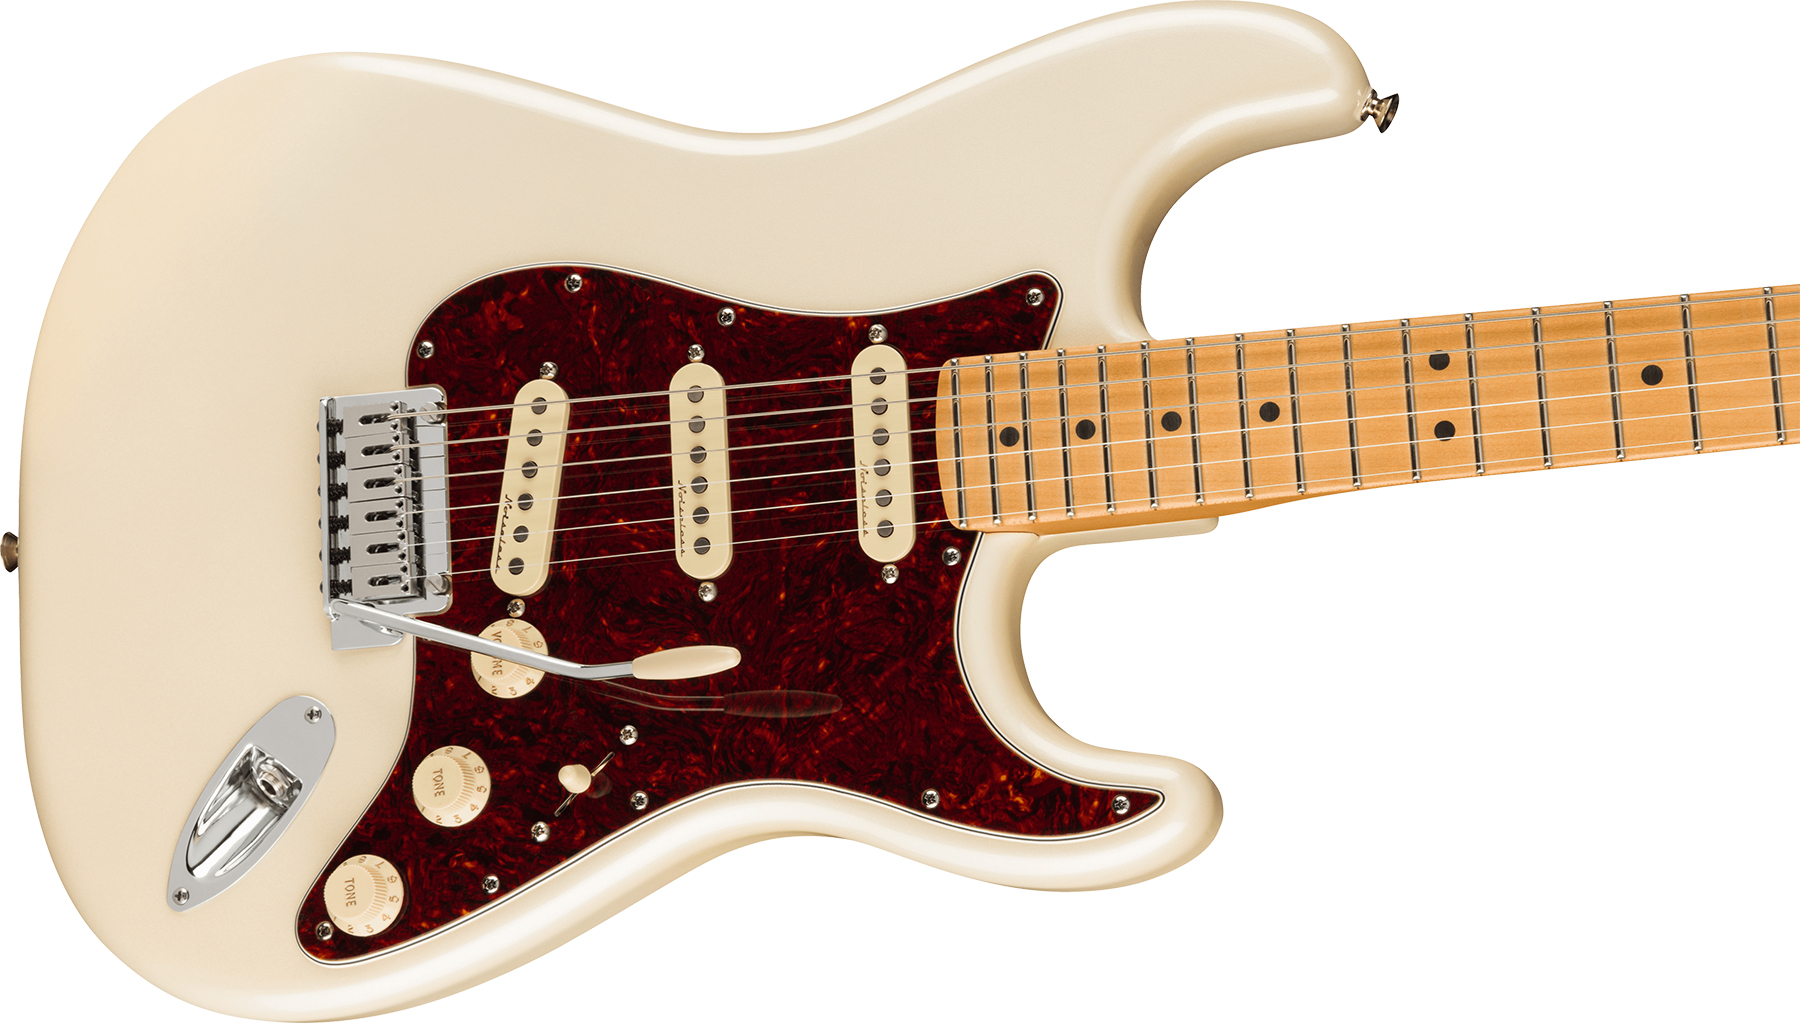 Fender Strat Player Plus Lh Mex Gaucher 3s Trem Mn - Olympic Pearl - Guitarra electrica para zurdos - Variation 2